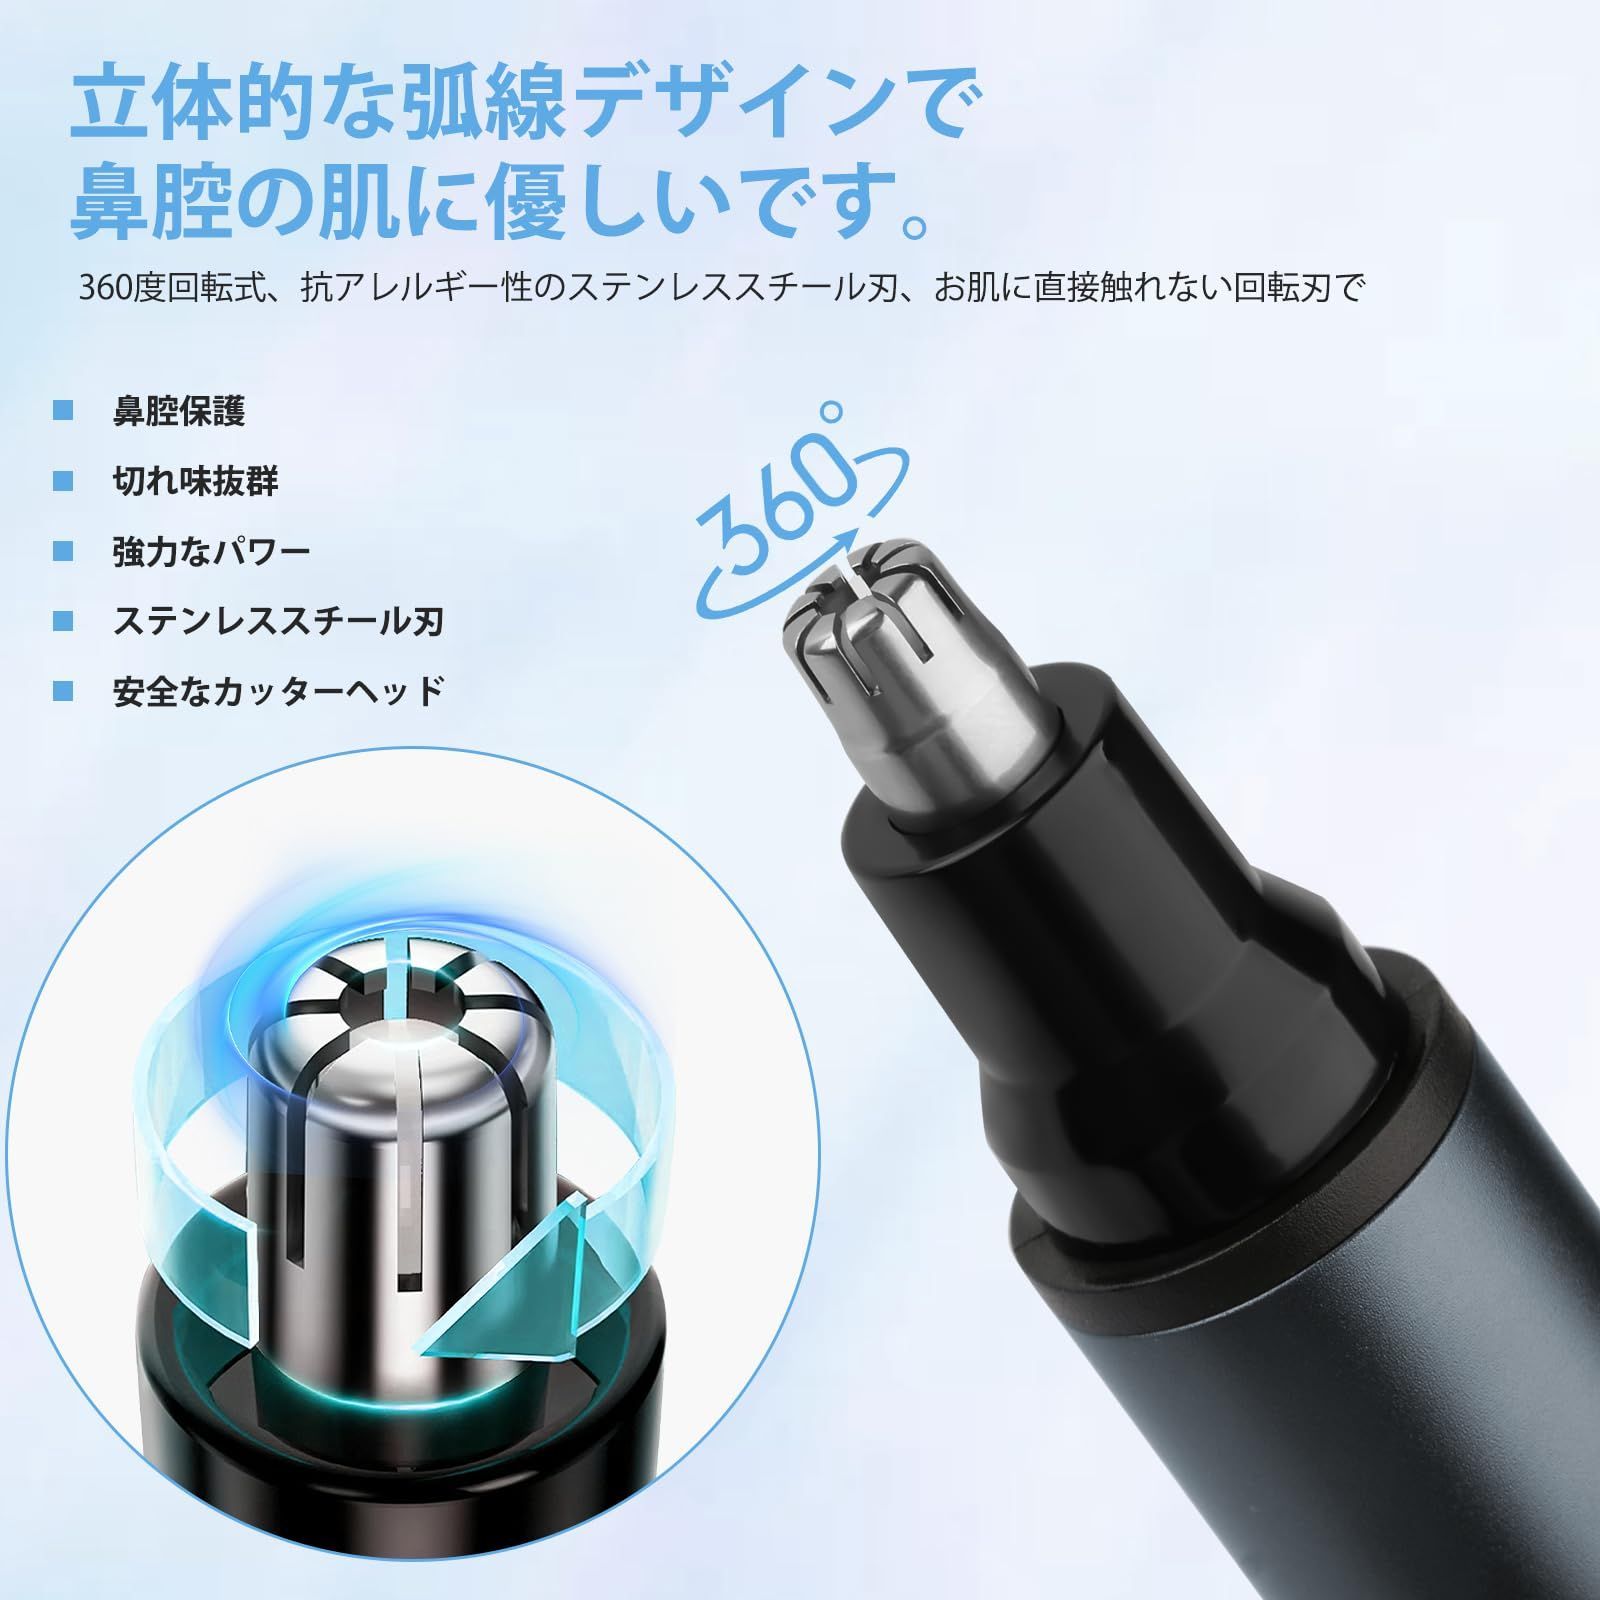 鼻毛カッター 電動 鼻毛切り 掃除用ブラシ付き USB充電式 水洗い可能